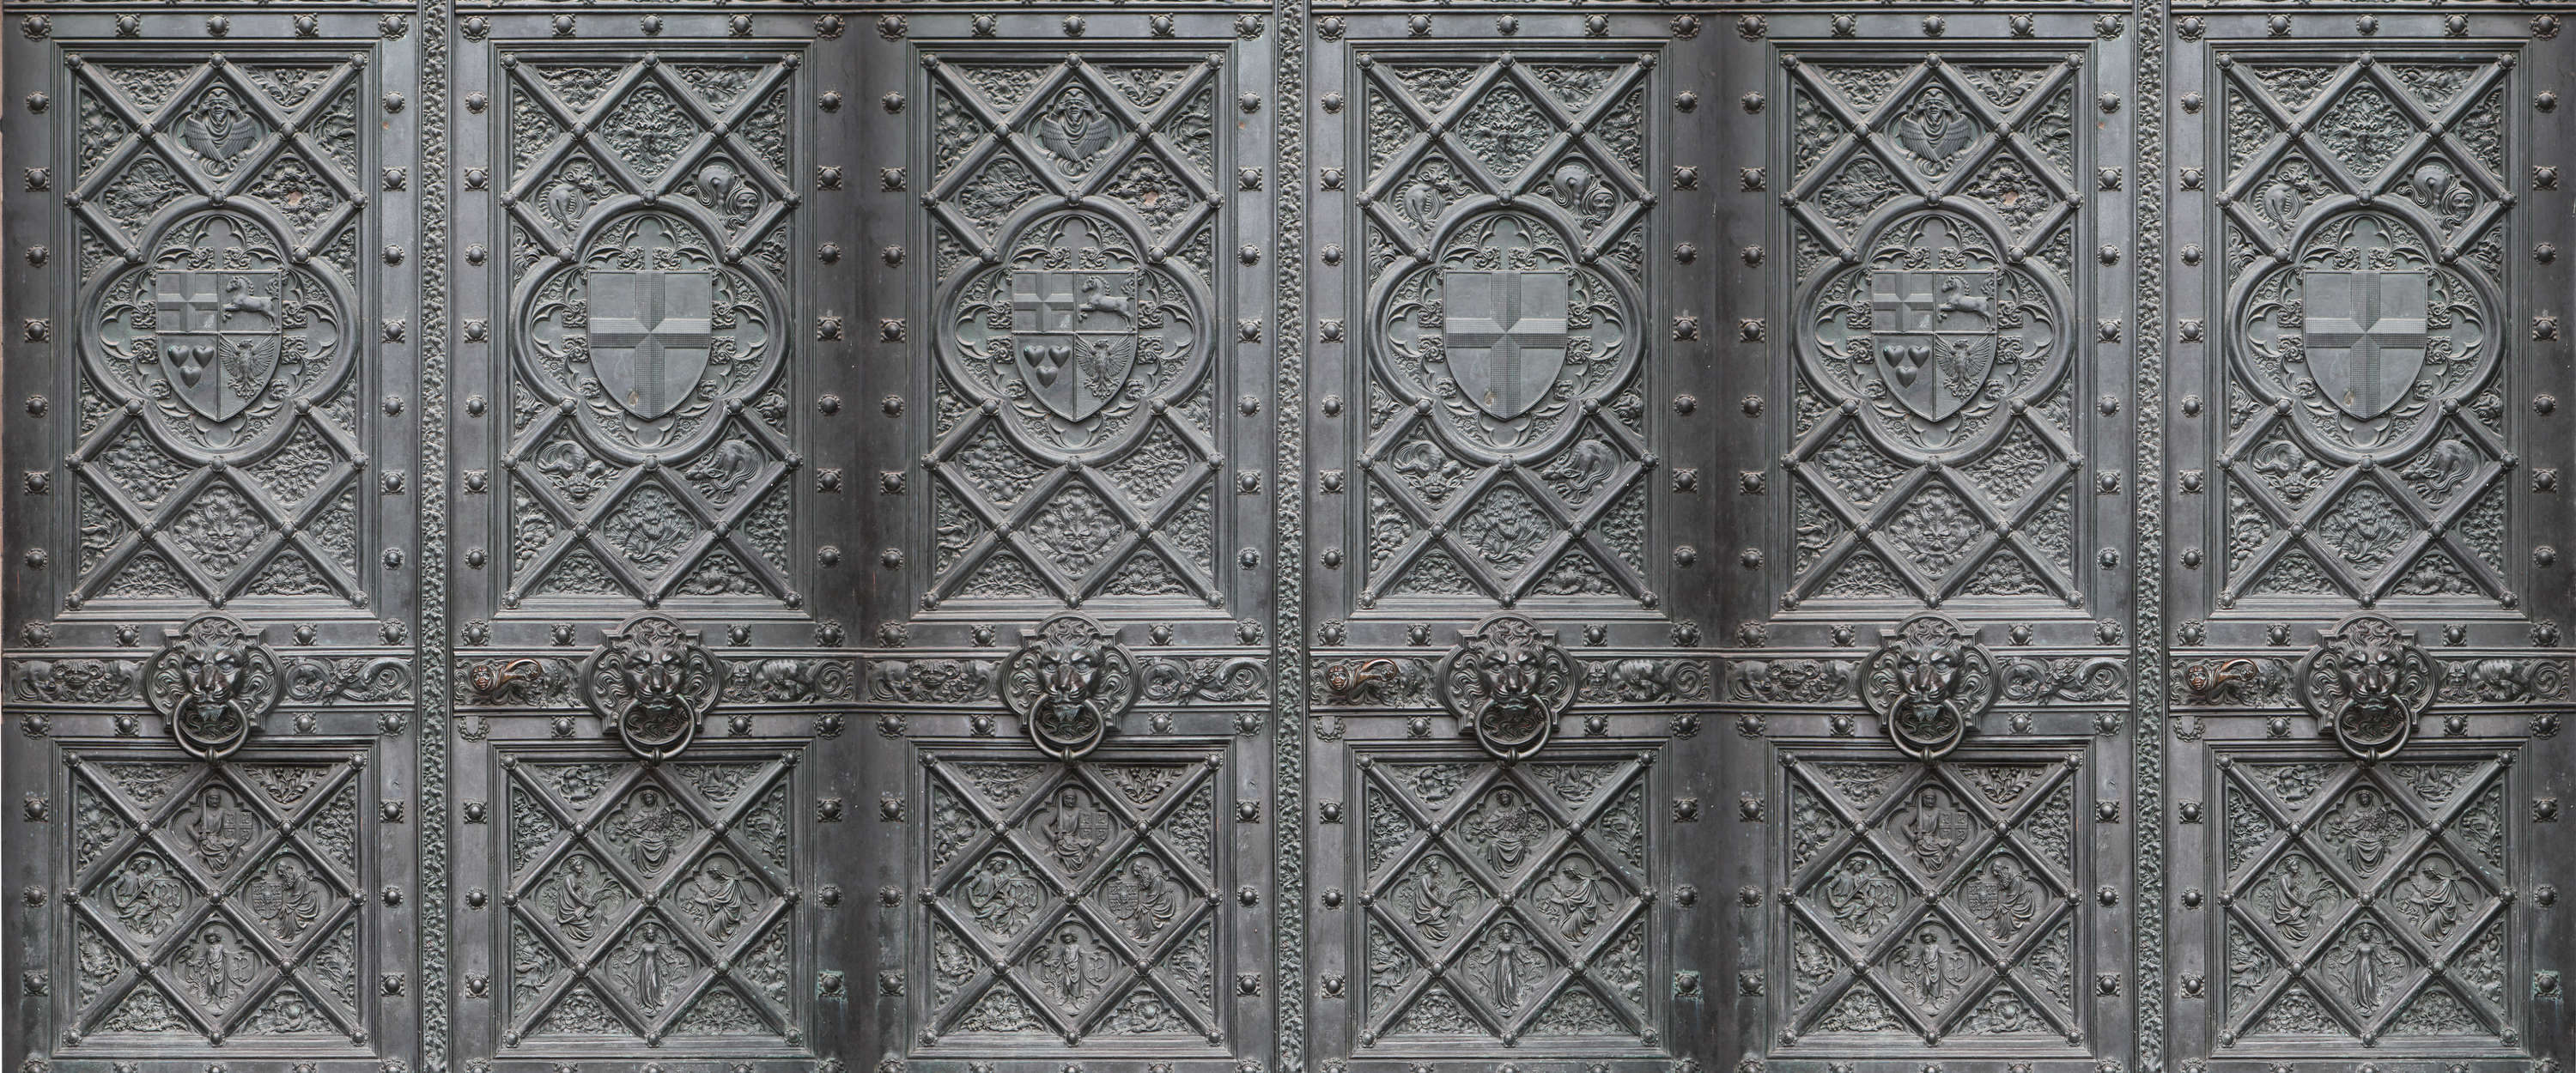             Metalen deurbehang in antieke stijl met detailpatroon
        